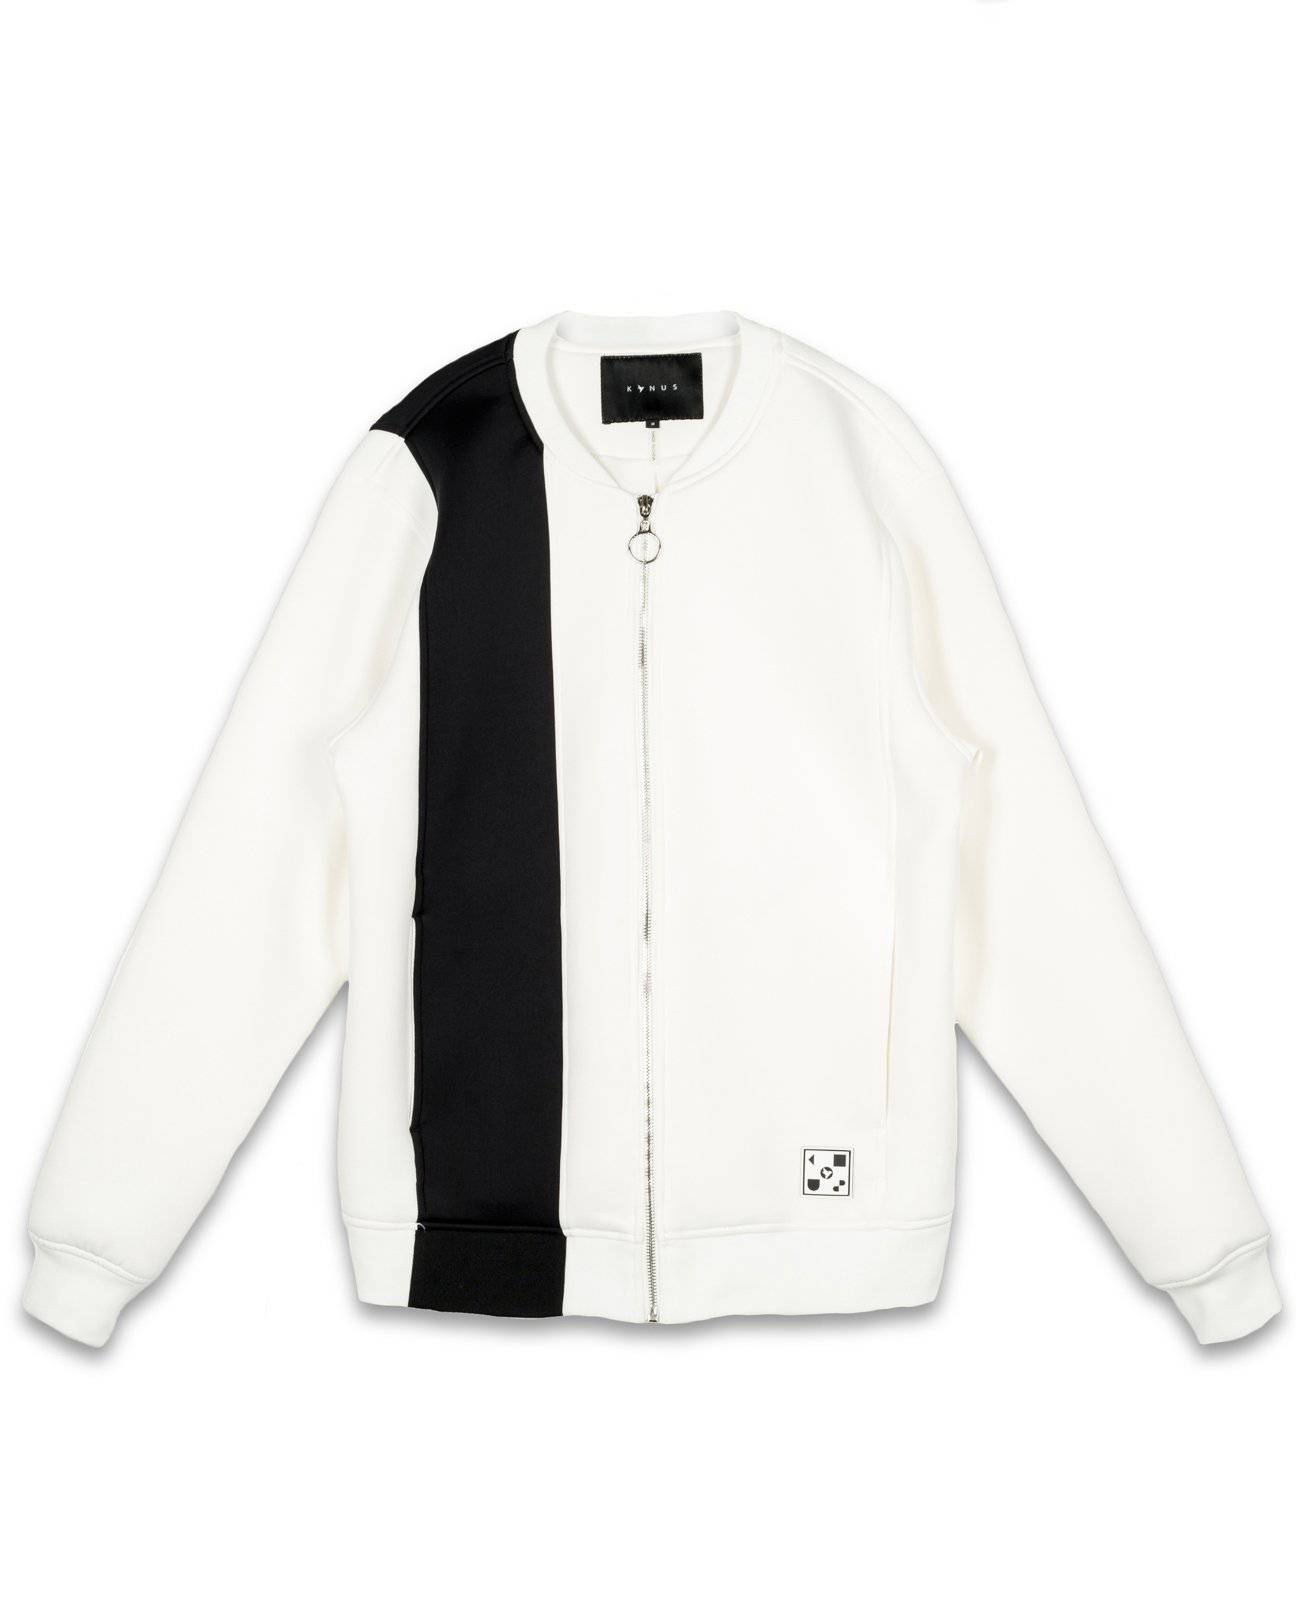 Konus Men's Neoprene Bomber Jacket in White by Shop at Konus